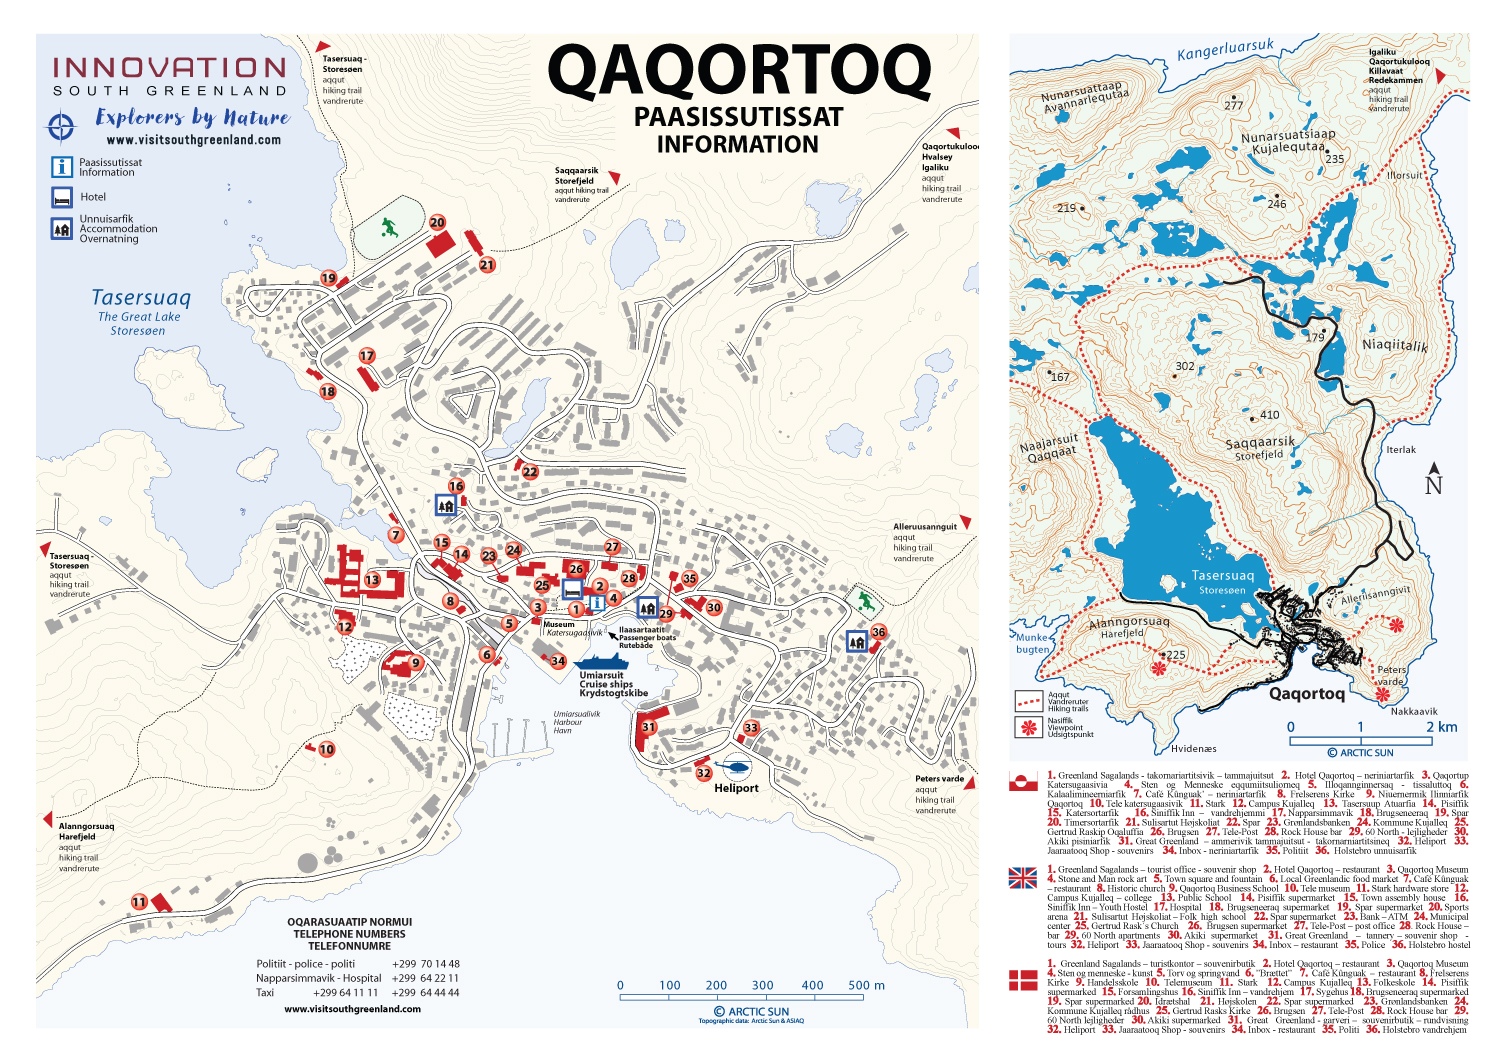 qaqortoq tourist map